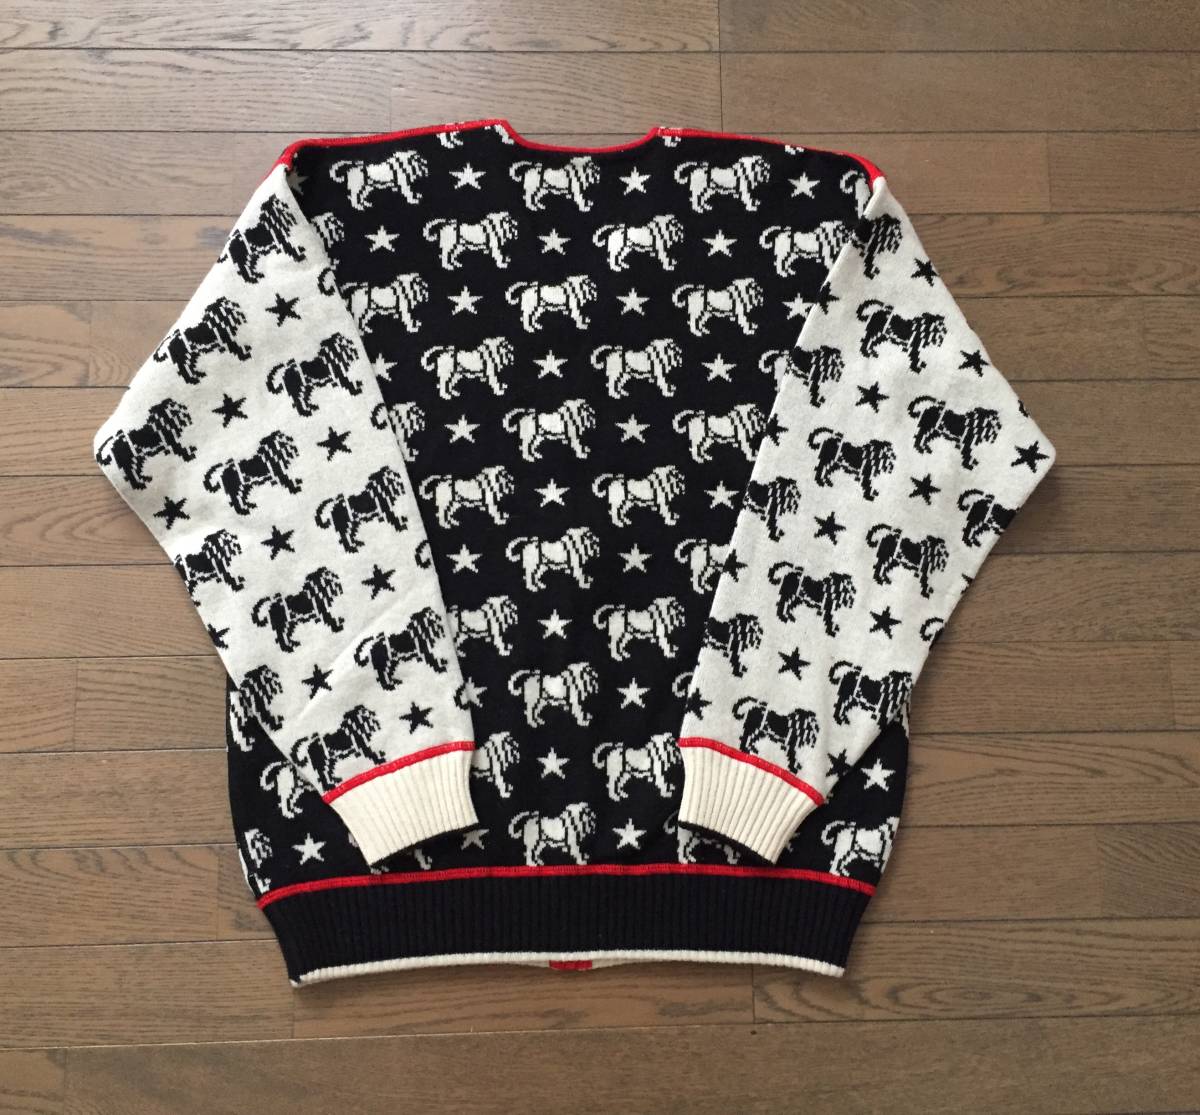 [KRIZIA UOMO] Zip свитер XL Panther общий рисунок переключатель вязаный редкий 90s Krizia мужской женский Италия производства 